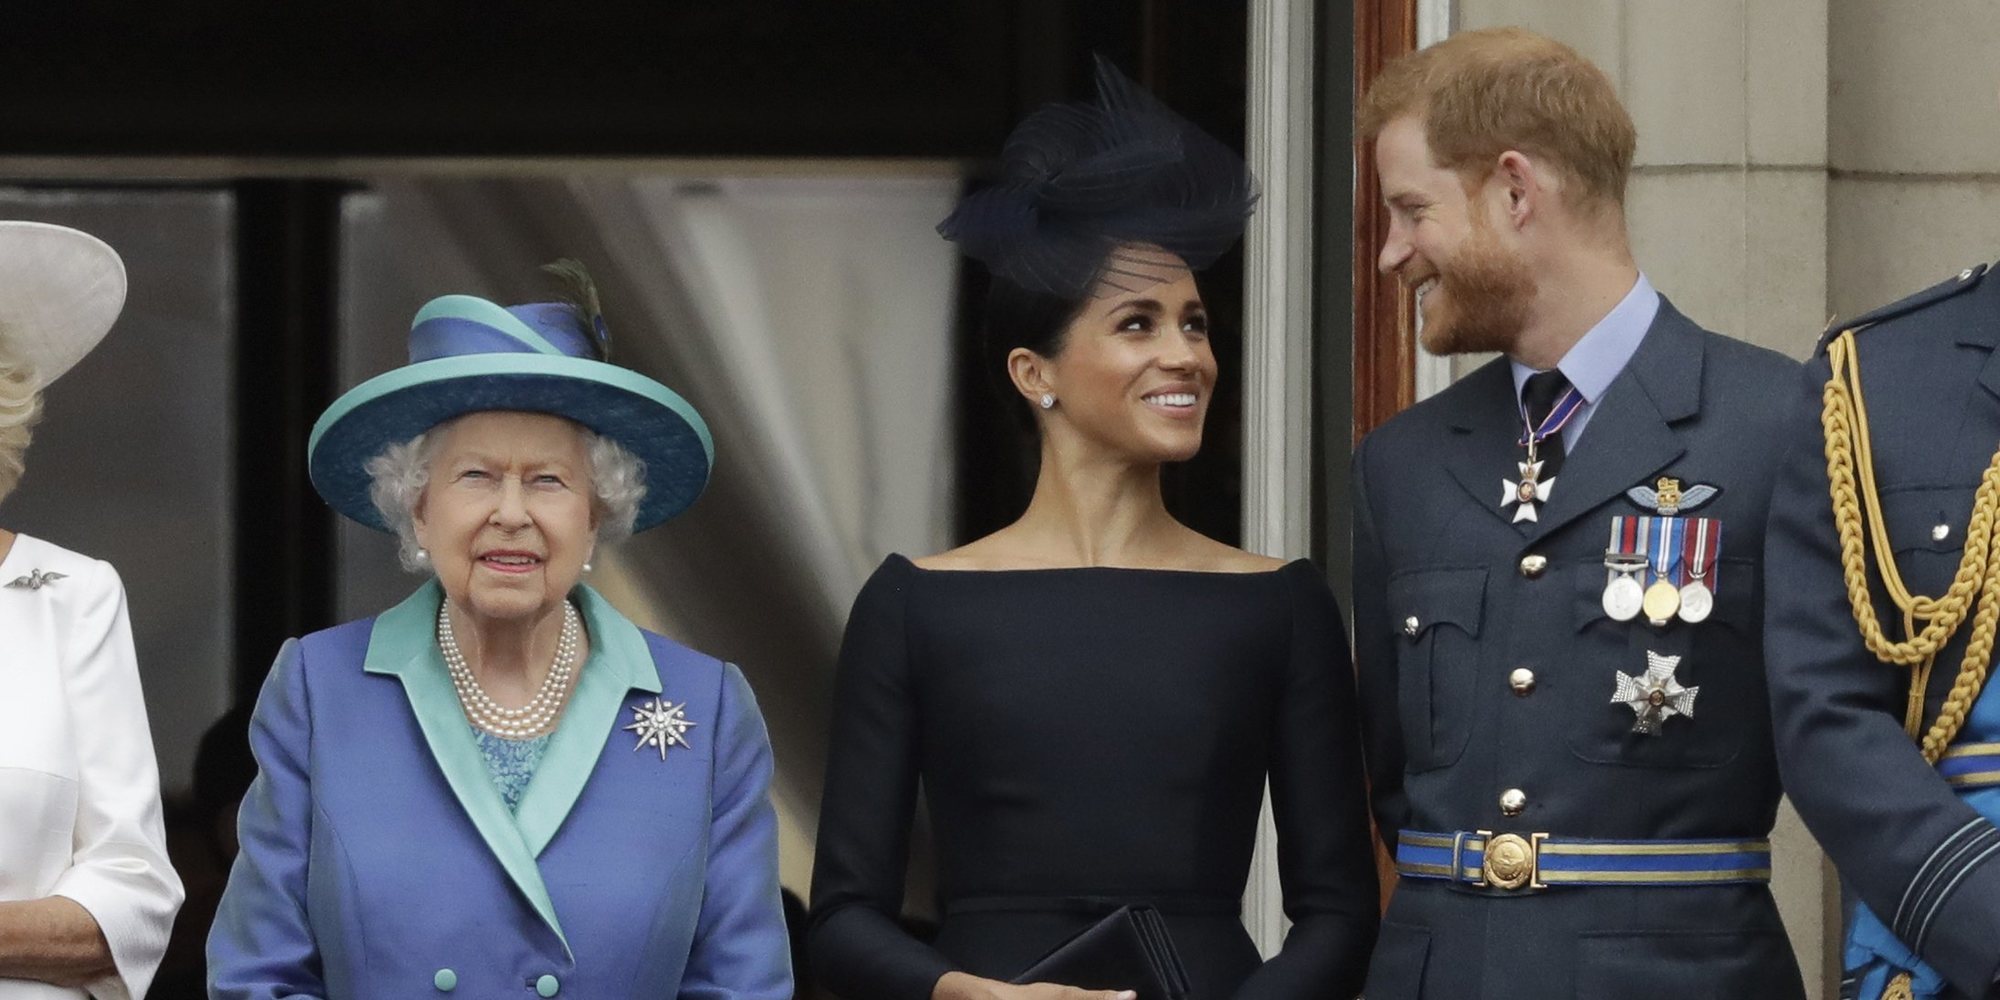 La Casa Real Británica emite un comunicado tras la entrevista del Príncipe Harry y Meghan Markle